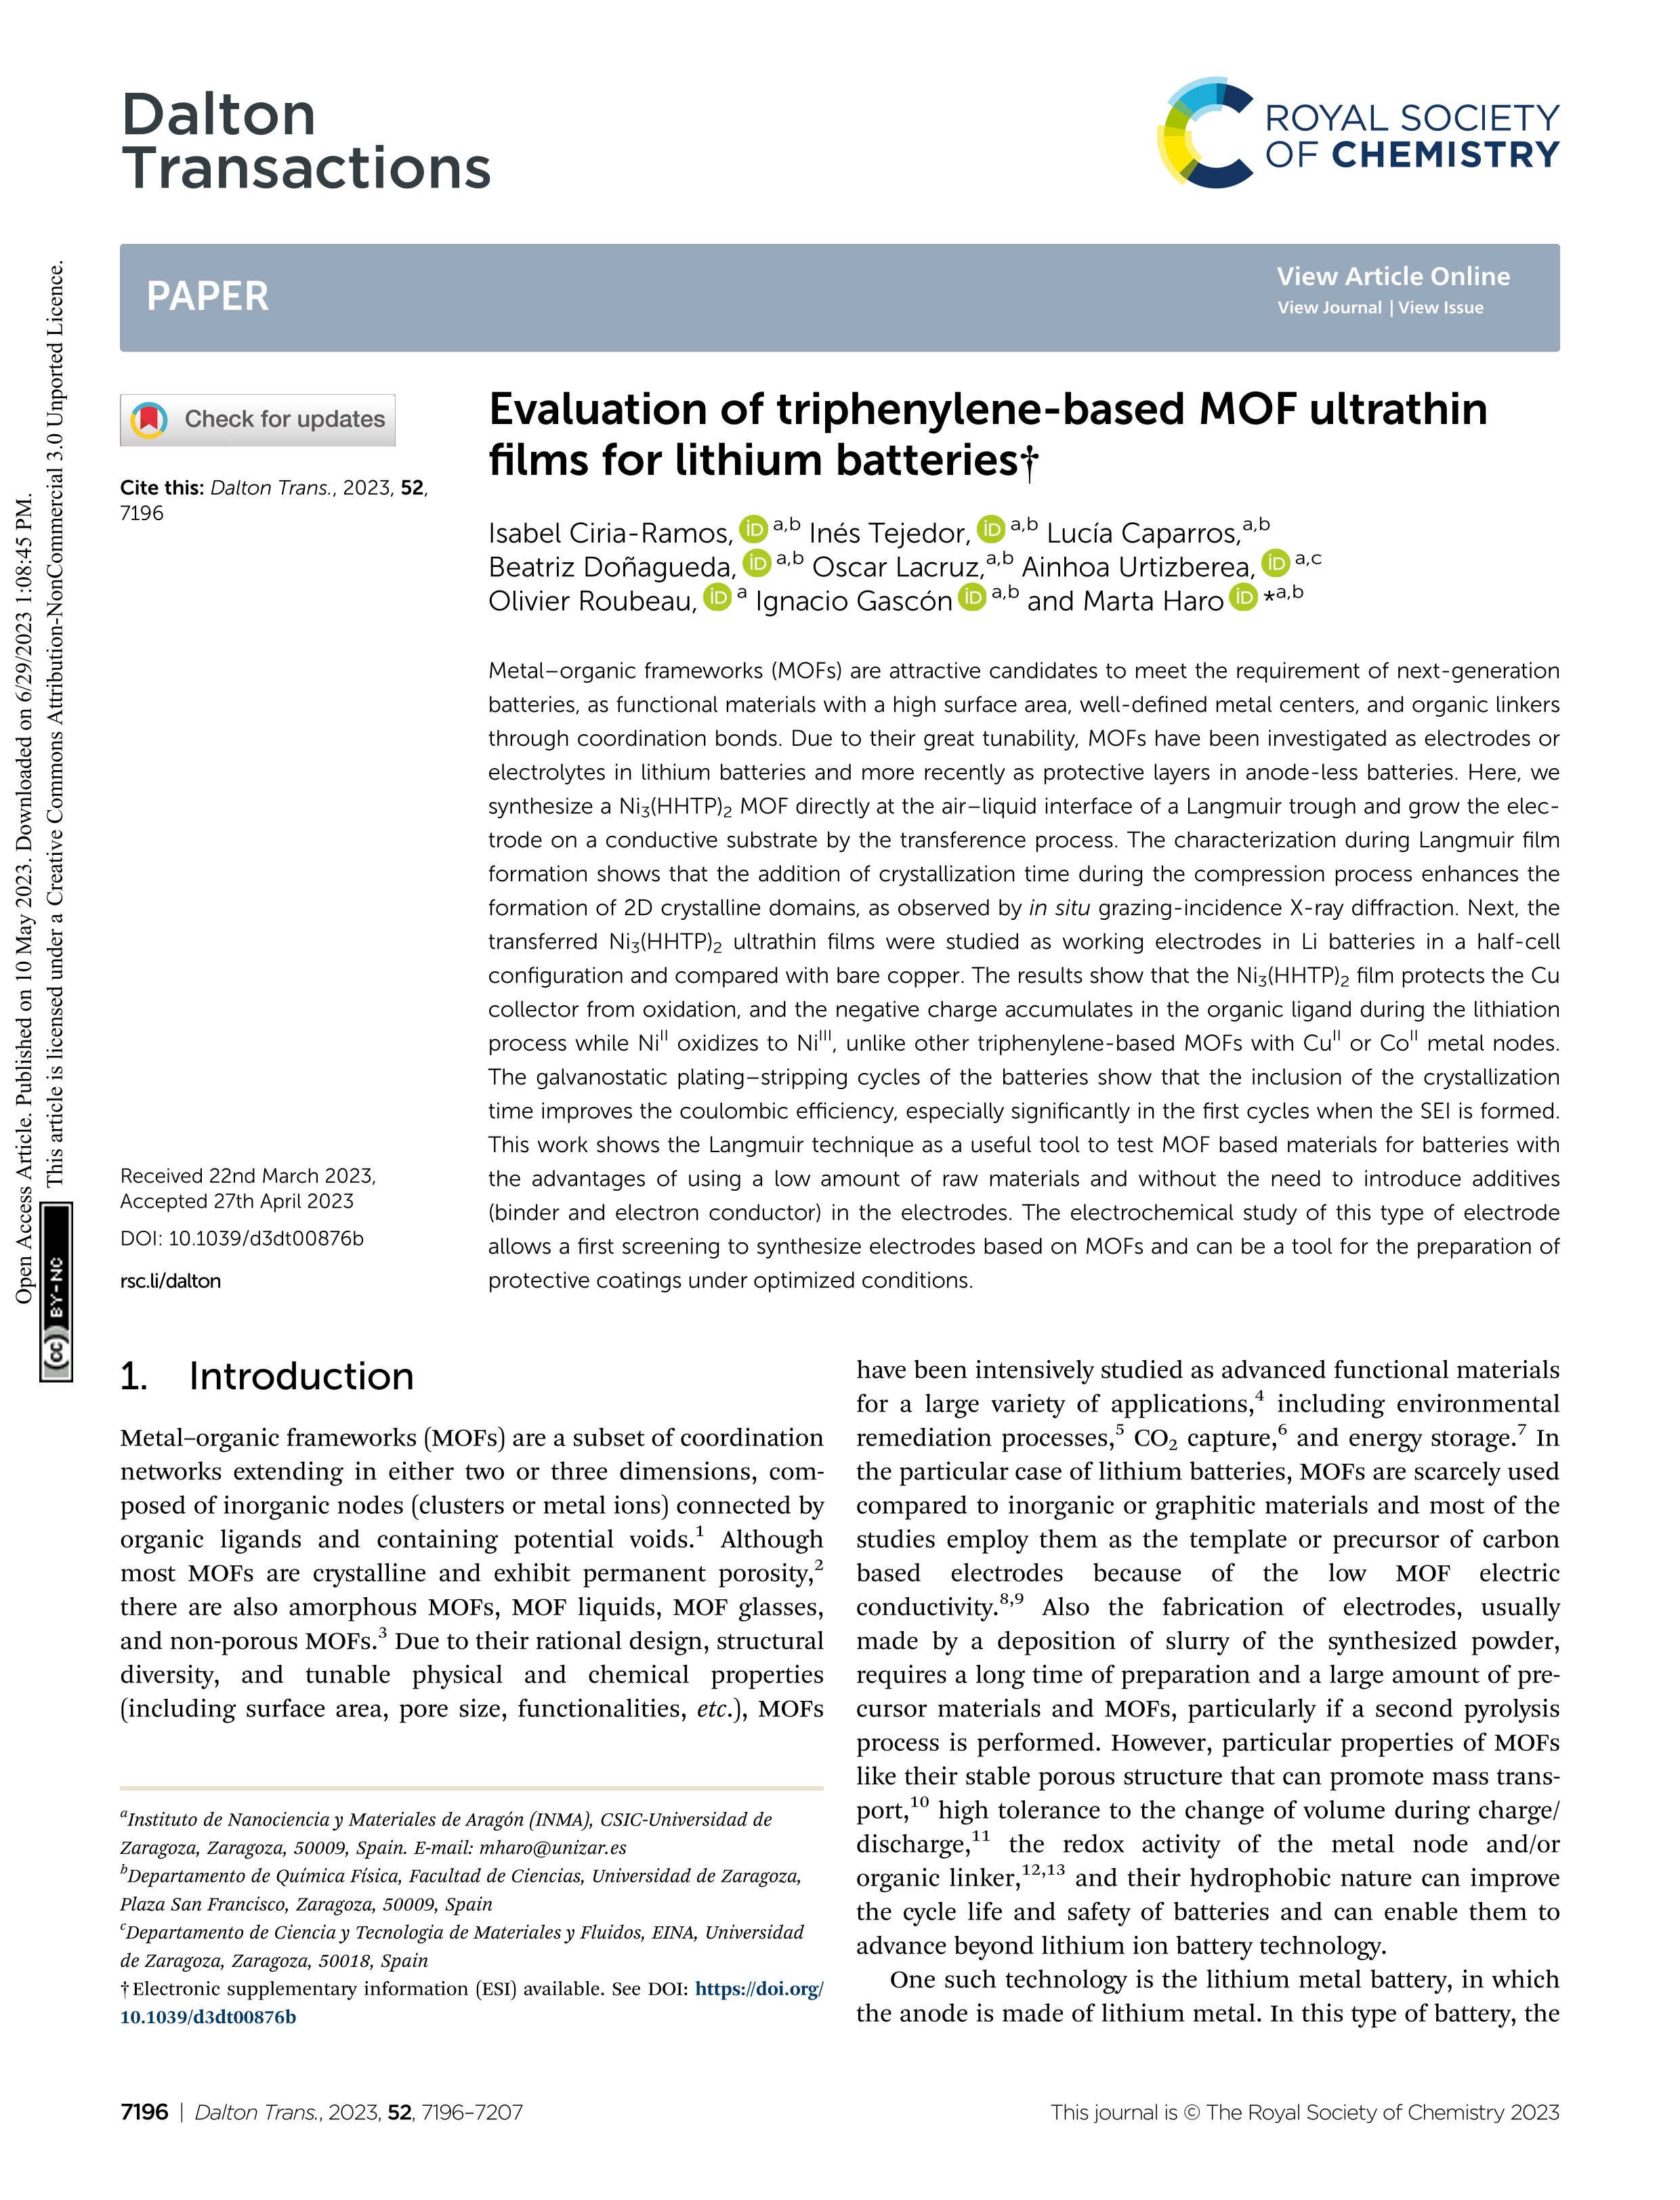 Evaluation of triphenylene-based MOF ultrathin films for lithium batteries